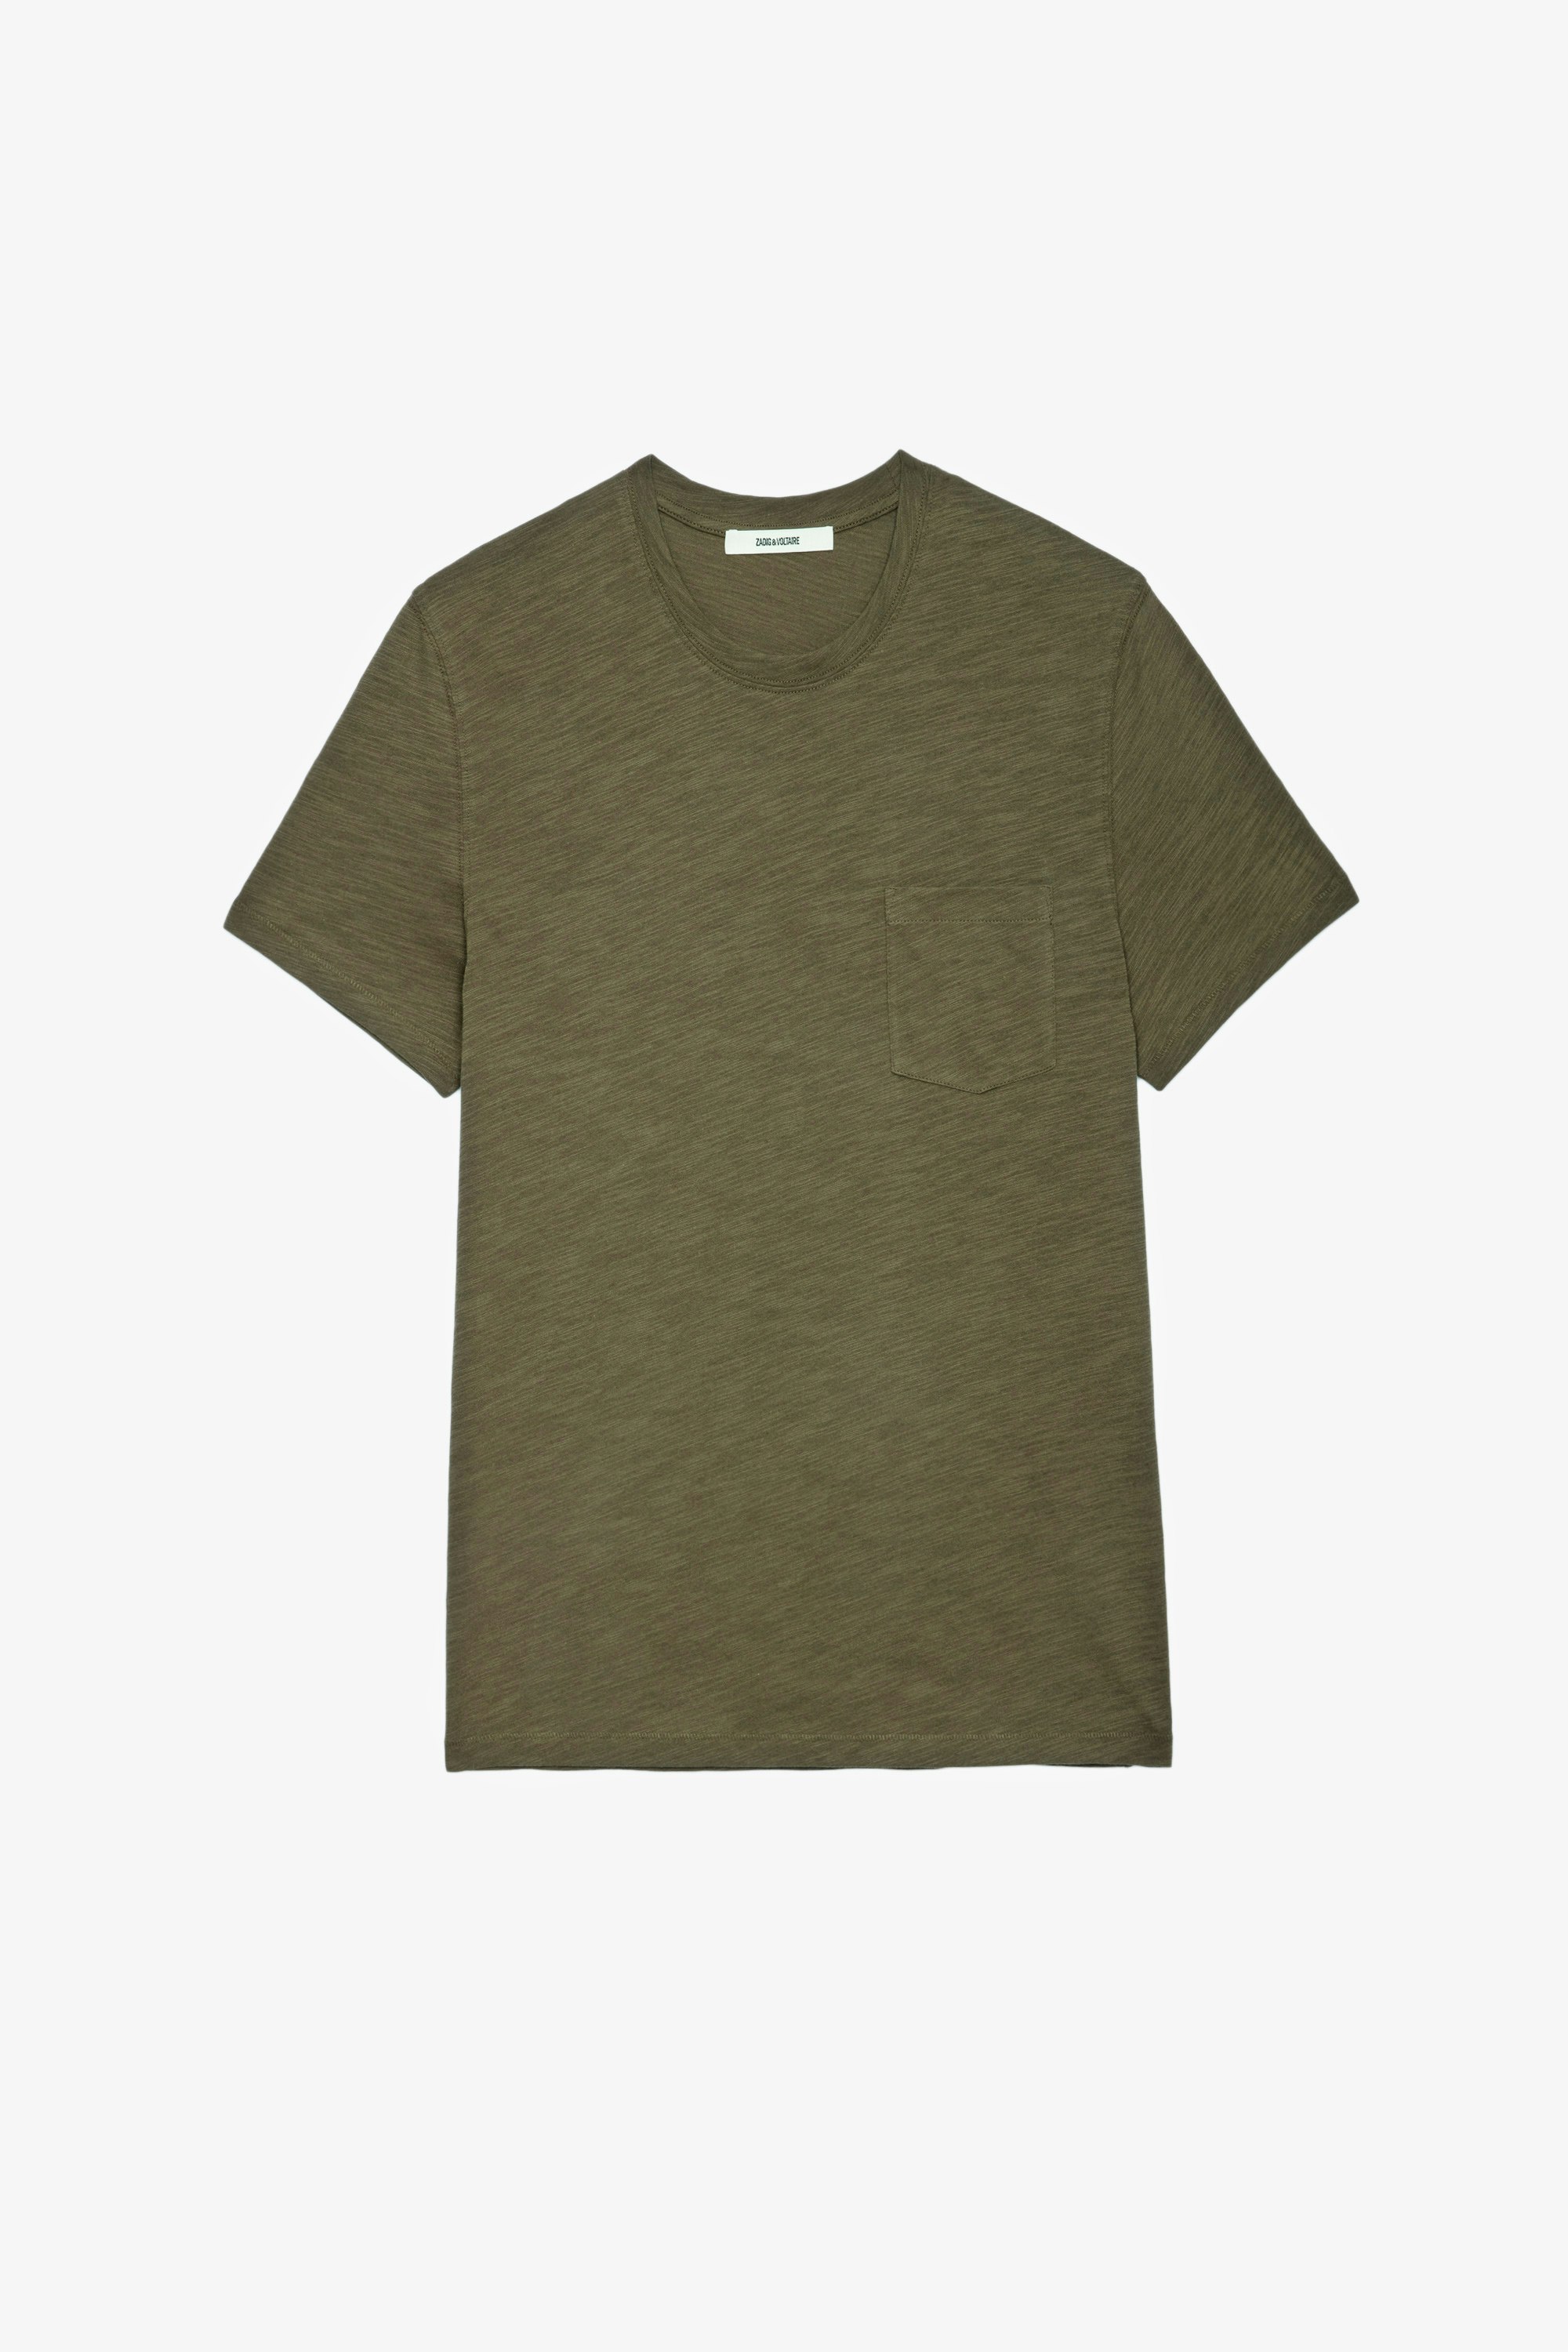 T-Shirt Stockholm Geflammt Herren-T-Shirt aus khakifarbener, geflammter Baumwolle mit Totenkopfmotiv auf dem Rücken